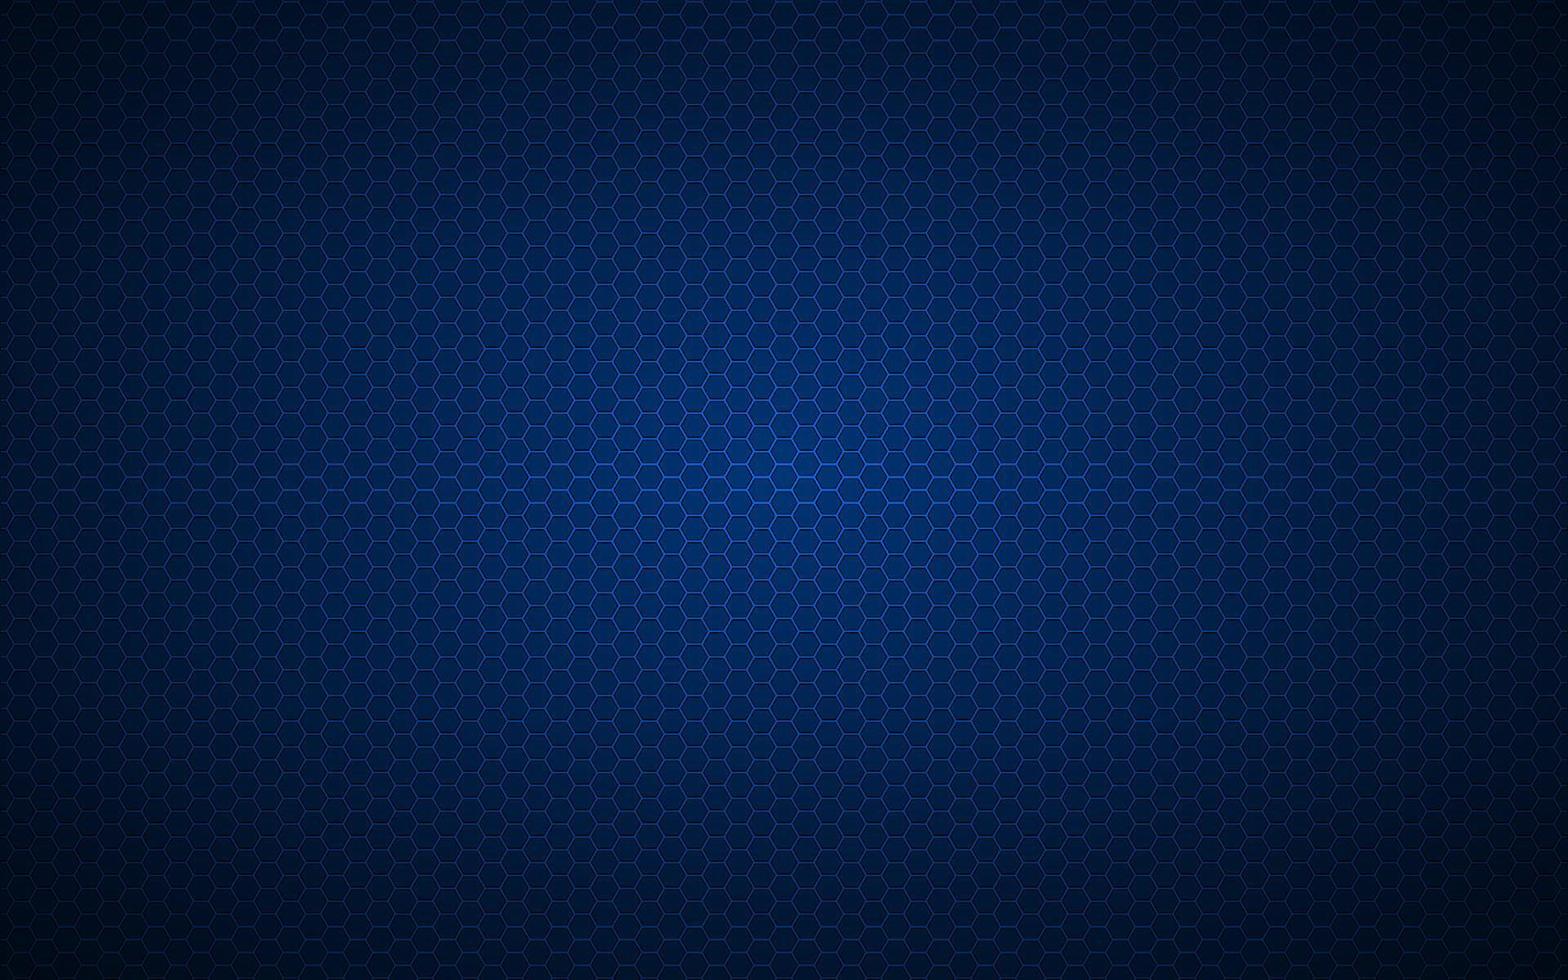 modern högupplöst blå geometrisk bakgrund med månghörnigt rutnät. abstrakt svart metalliskt sexkantigt mönster. enkel vektorillustration vektor